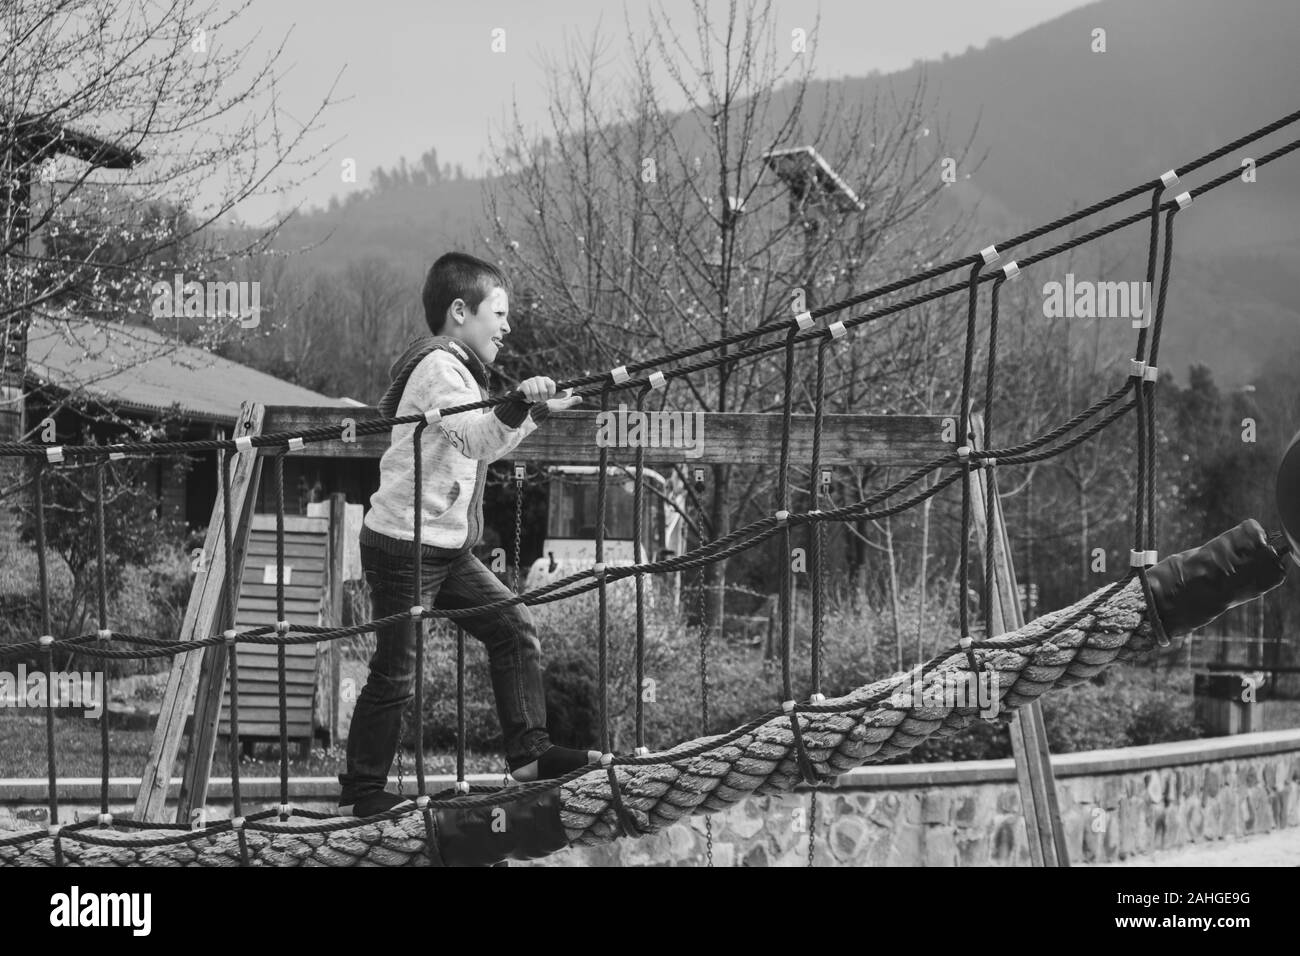 Jeune garçon traversant le pont tout en tenant aux cordes au parc de Bilbao. Photographie noir et blanc. Gamin à l'aire de jeux Banque D'Images